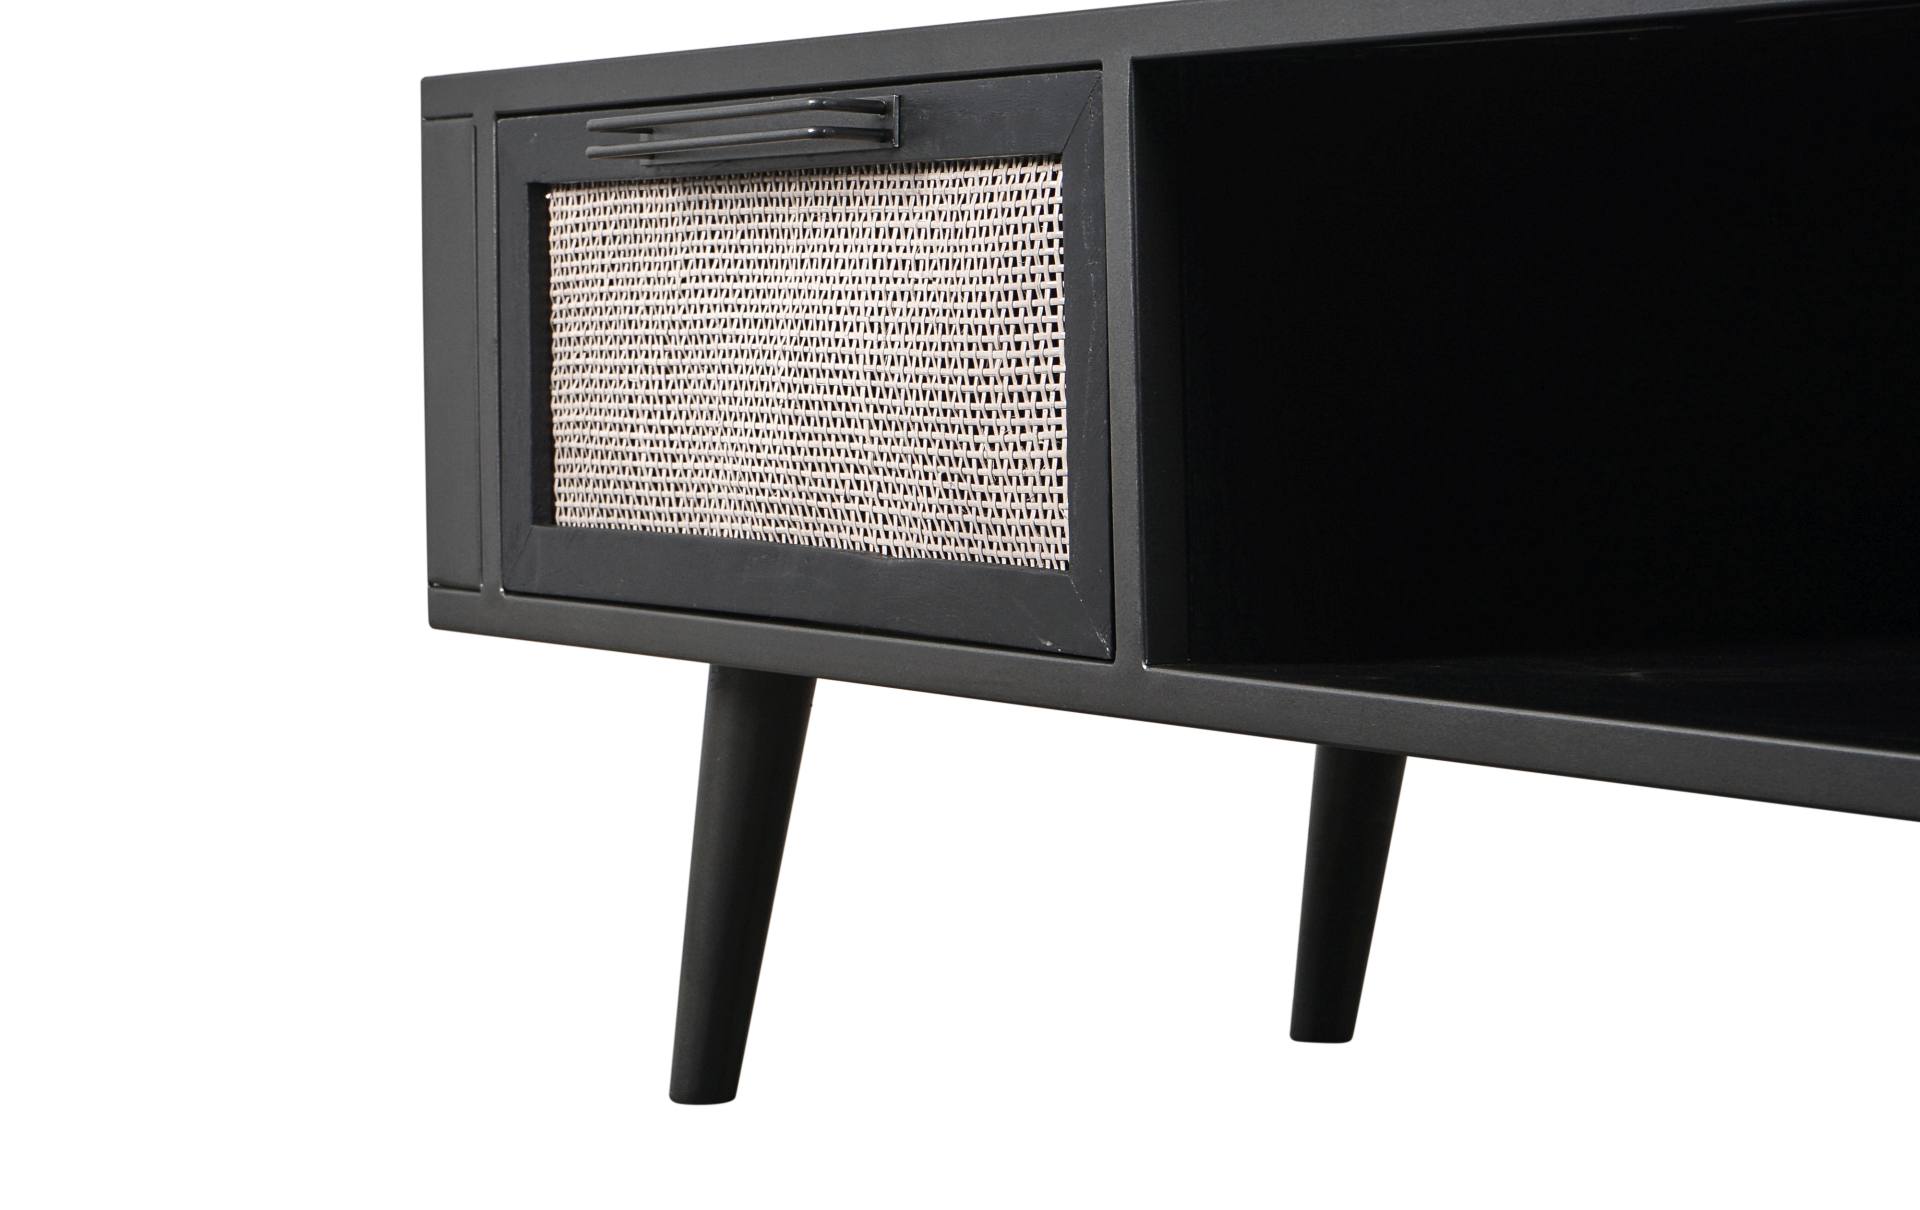 Das TV-Board Nordic Mindi Rattan überzeugt mit seinem Industriellen Design. Gefertigt wurde es aus Rattan und Mindi Holz, welches einen schwarzen Farbton besitzt. Das Gestell ist aus Metall und hat eine schwarze Farbe. Das TV-Board verfügt über zwei Schub